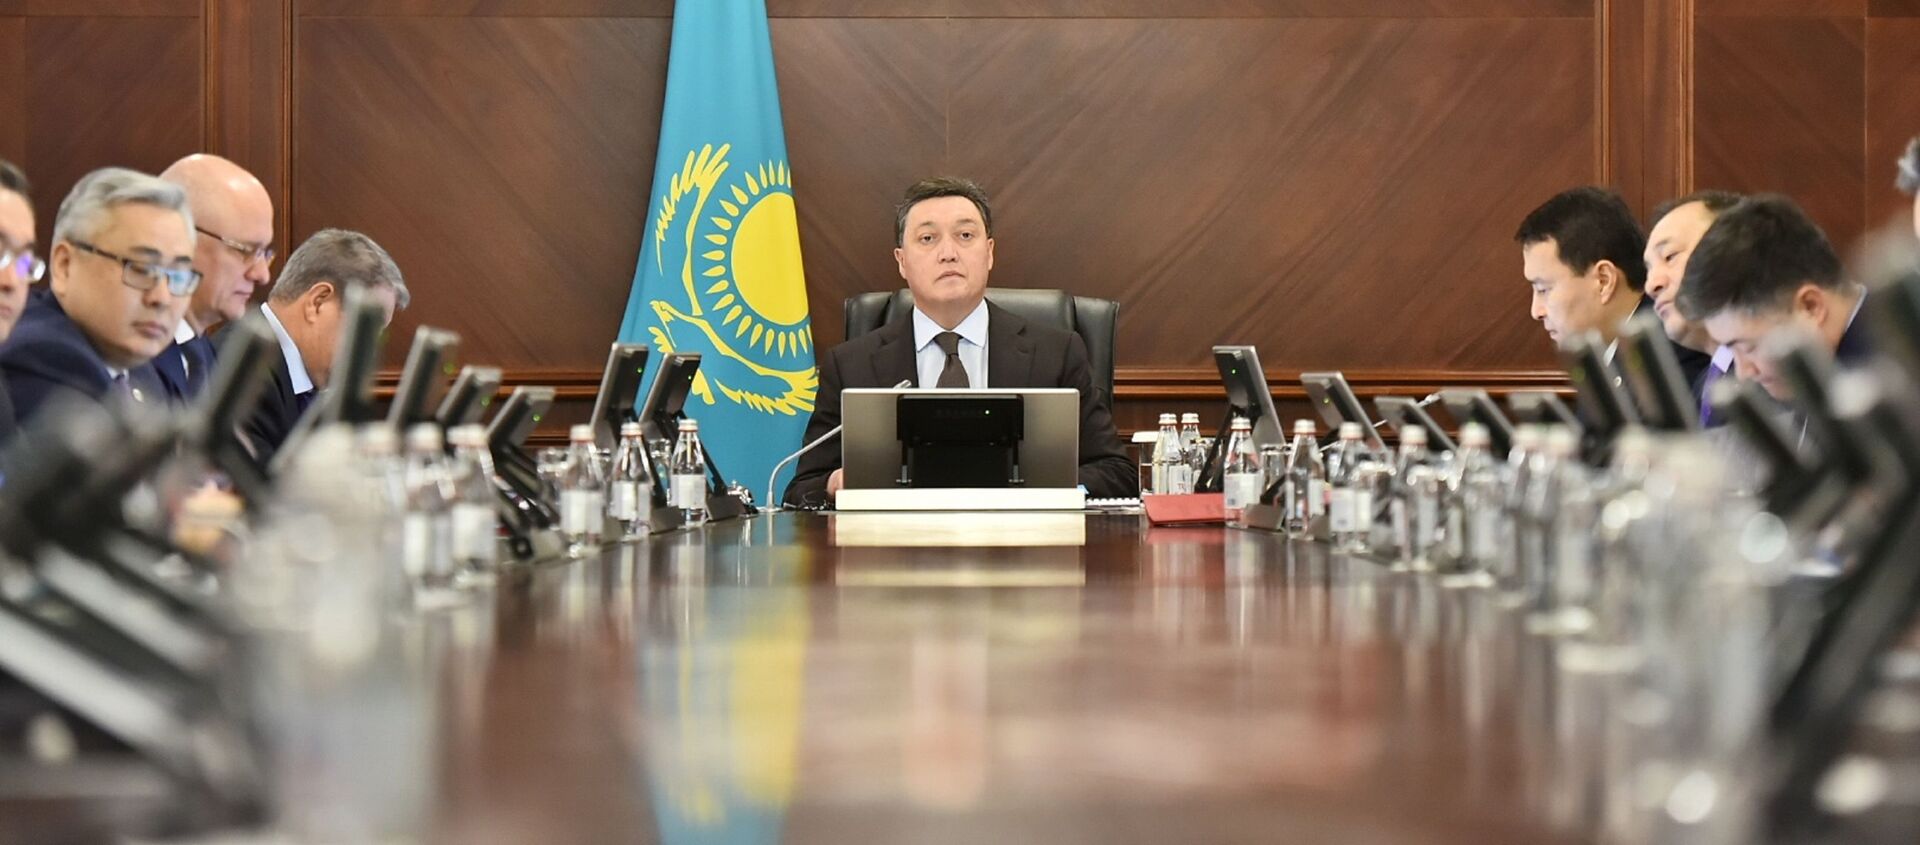 Заседание правительства Казахстана  - Sputnik Казахстан, 1920, 05.04.2021